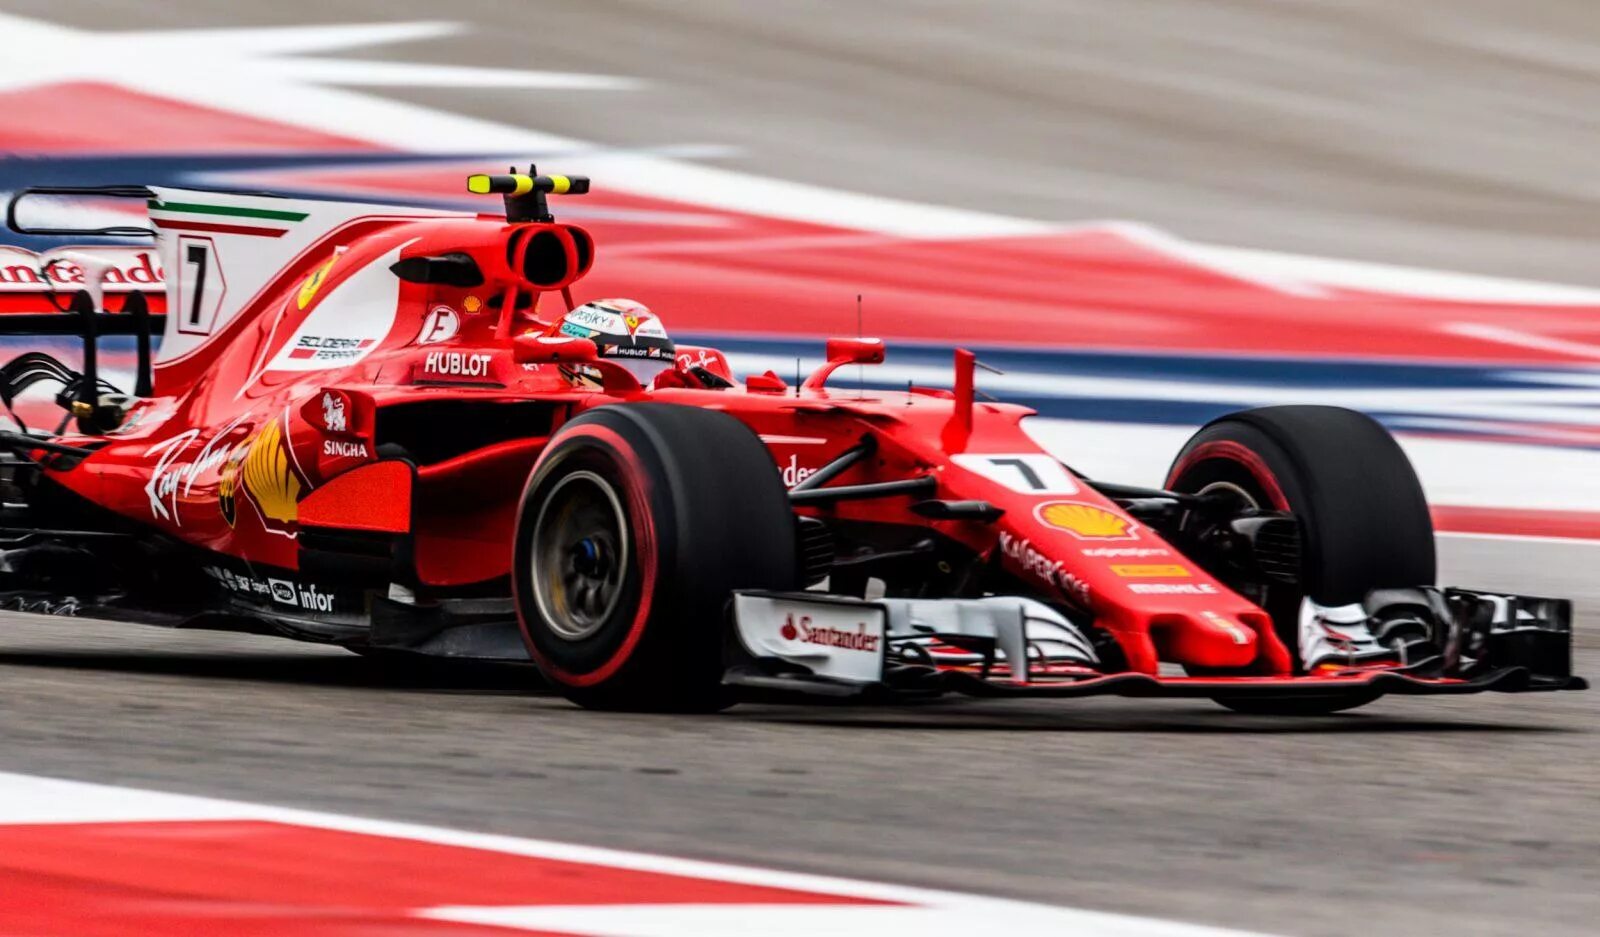 Formula f1 2018 bolids. Болид формулы 1. Скорость гоночного болида формулы 1. F1 bolid Speed. Формула 1 время начала